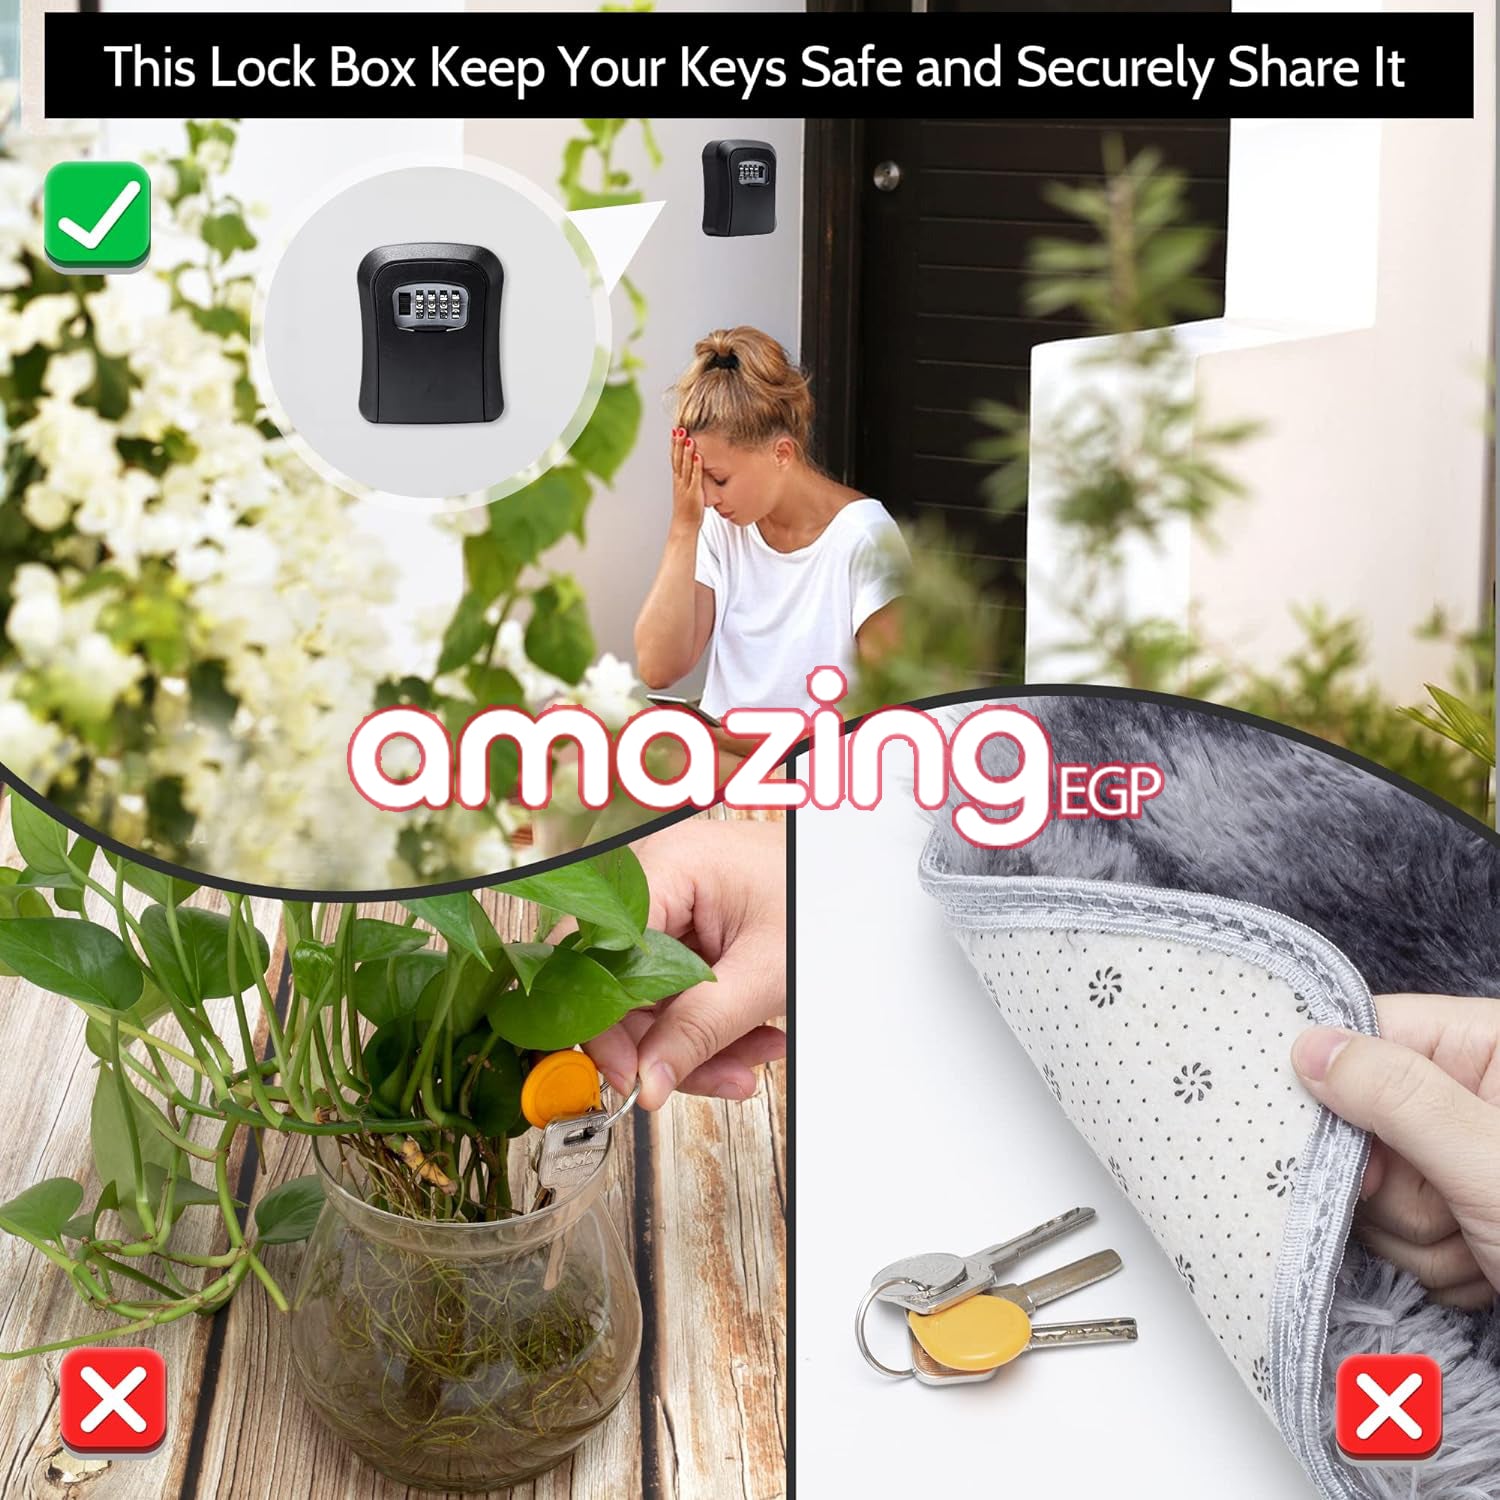 صندوق قفل للمفاتيح خزنة معدنية للمفاتيح بقفل من 4 ارقام للاستخدام في الاماكن الخارجية يثبت على الحائط لمفاتيح المنزل - معدن بالكامل [اسود]